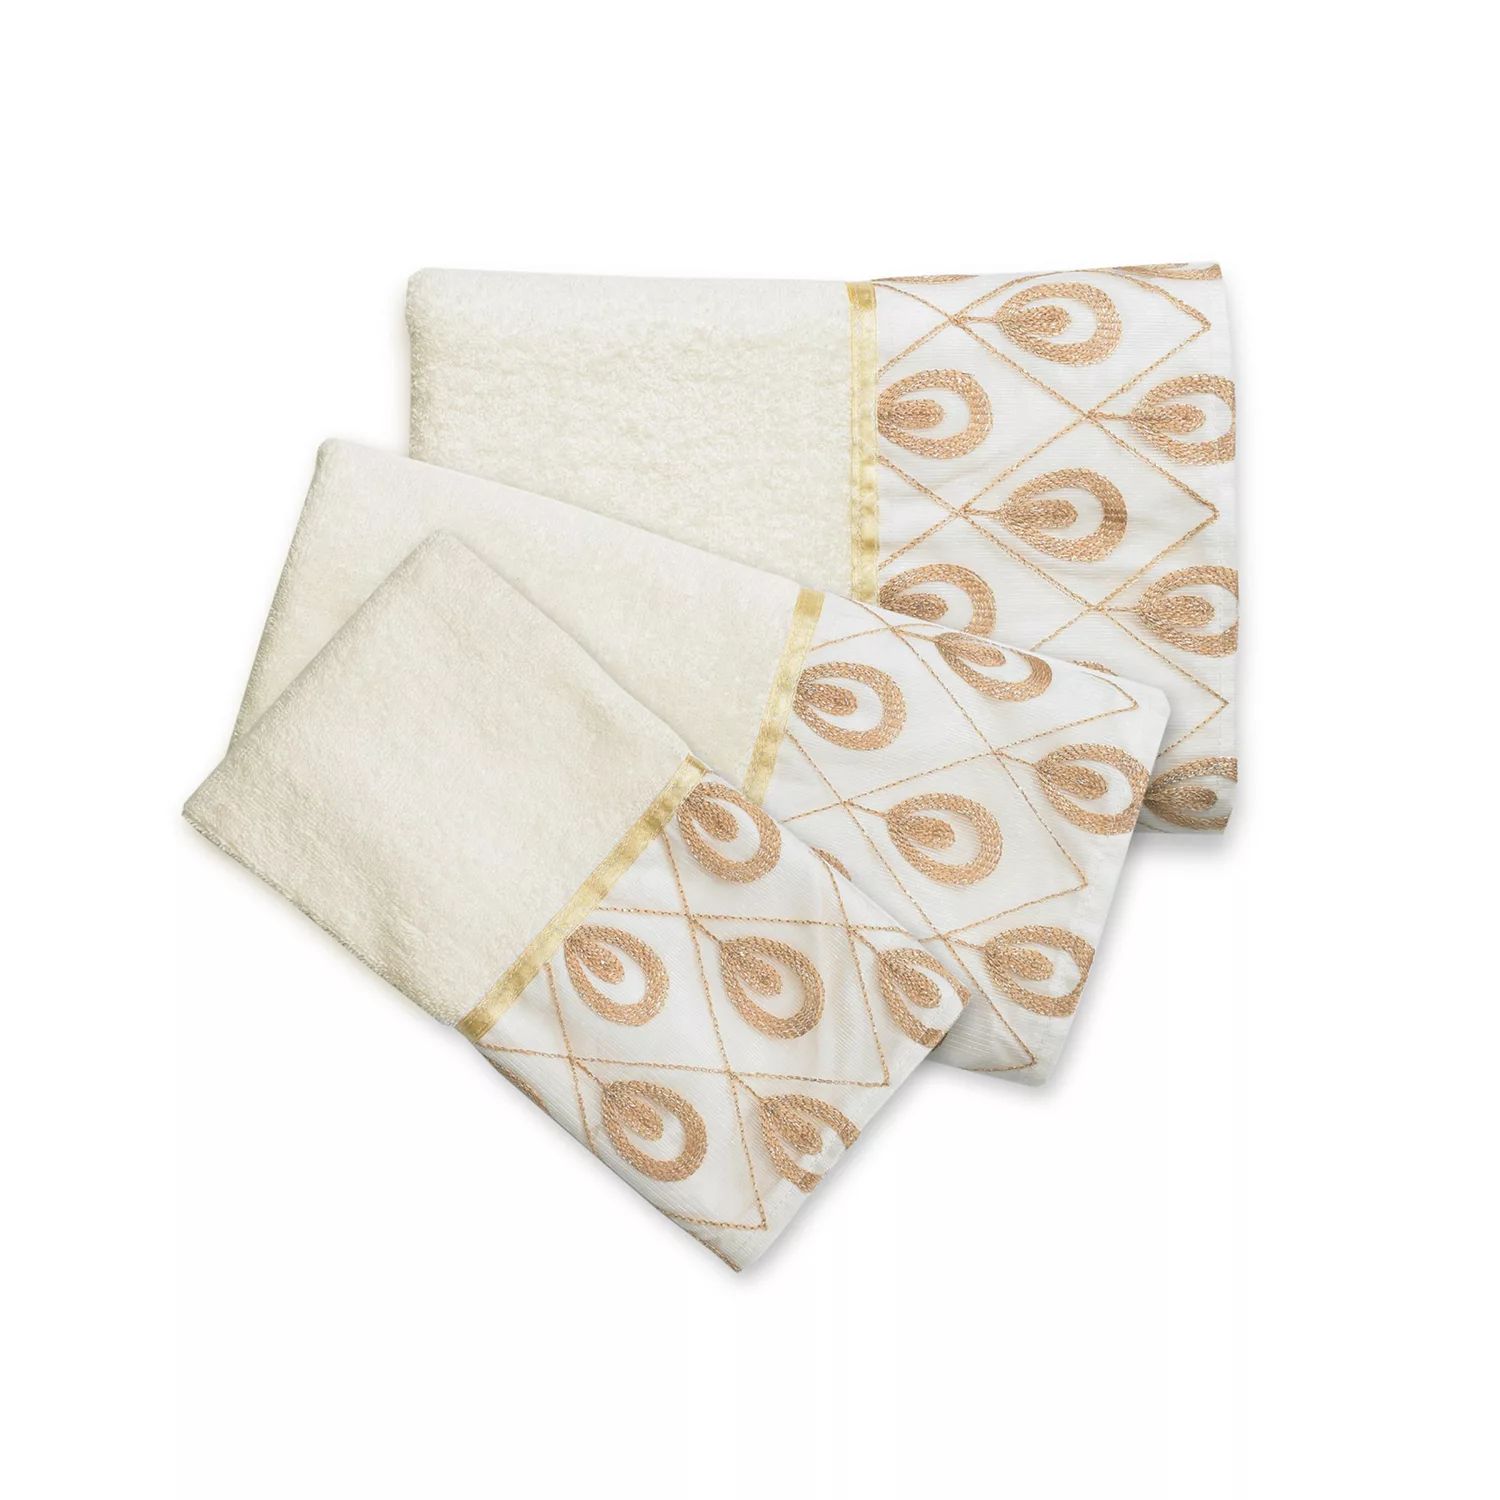 Популярный набор полотенец для ванной Seraphina из 3 предметов популярный набор полотенец bath secret garden из 3 предметов